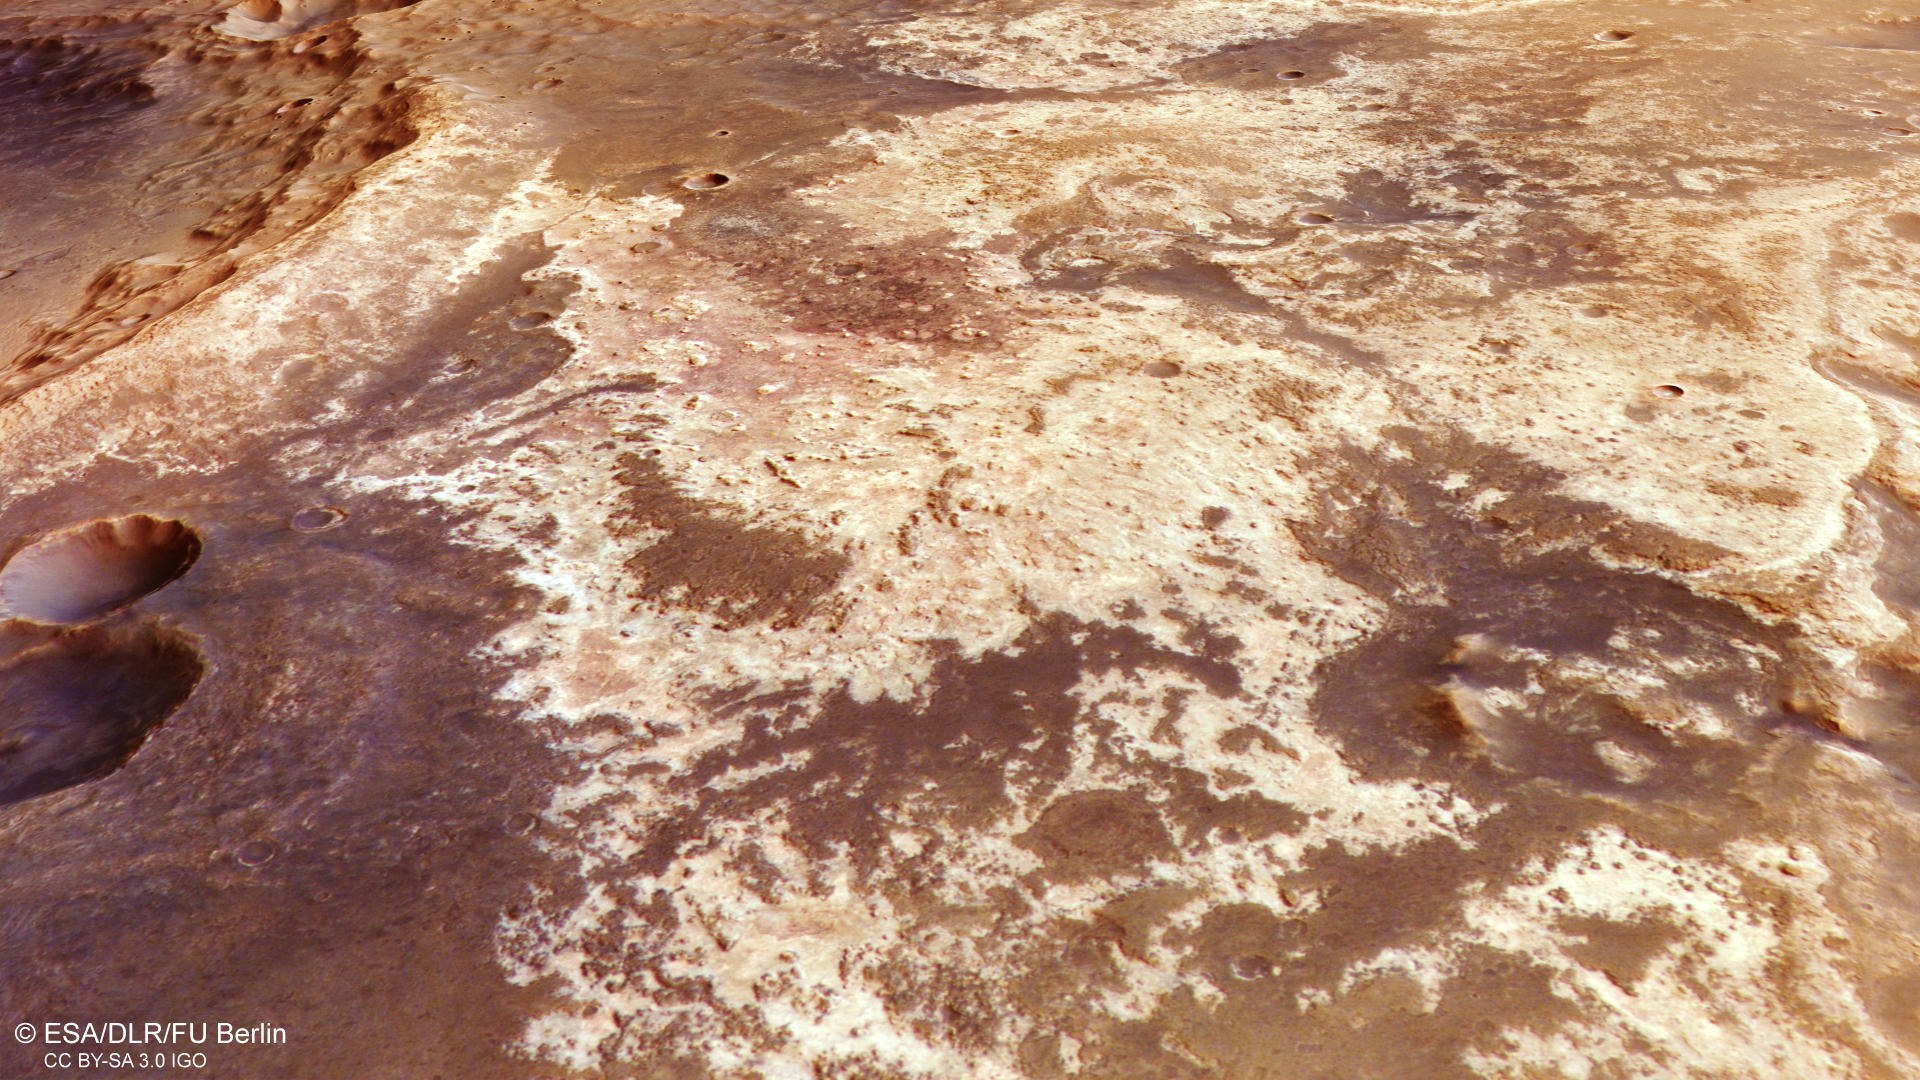 Wasserhaltige Tonminerale im Westen von Mawrth Vallis